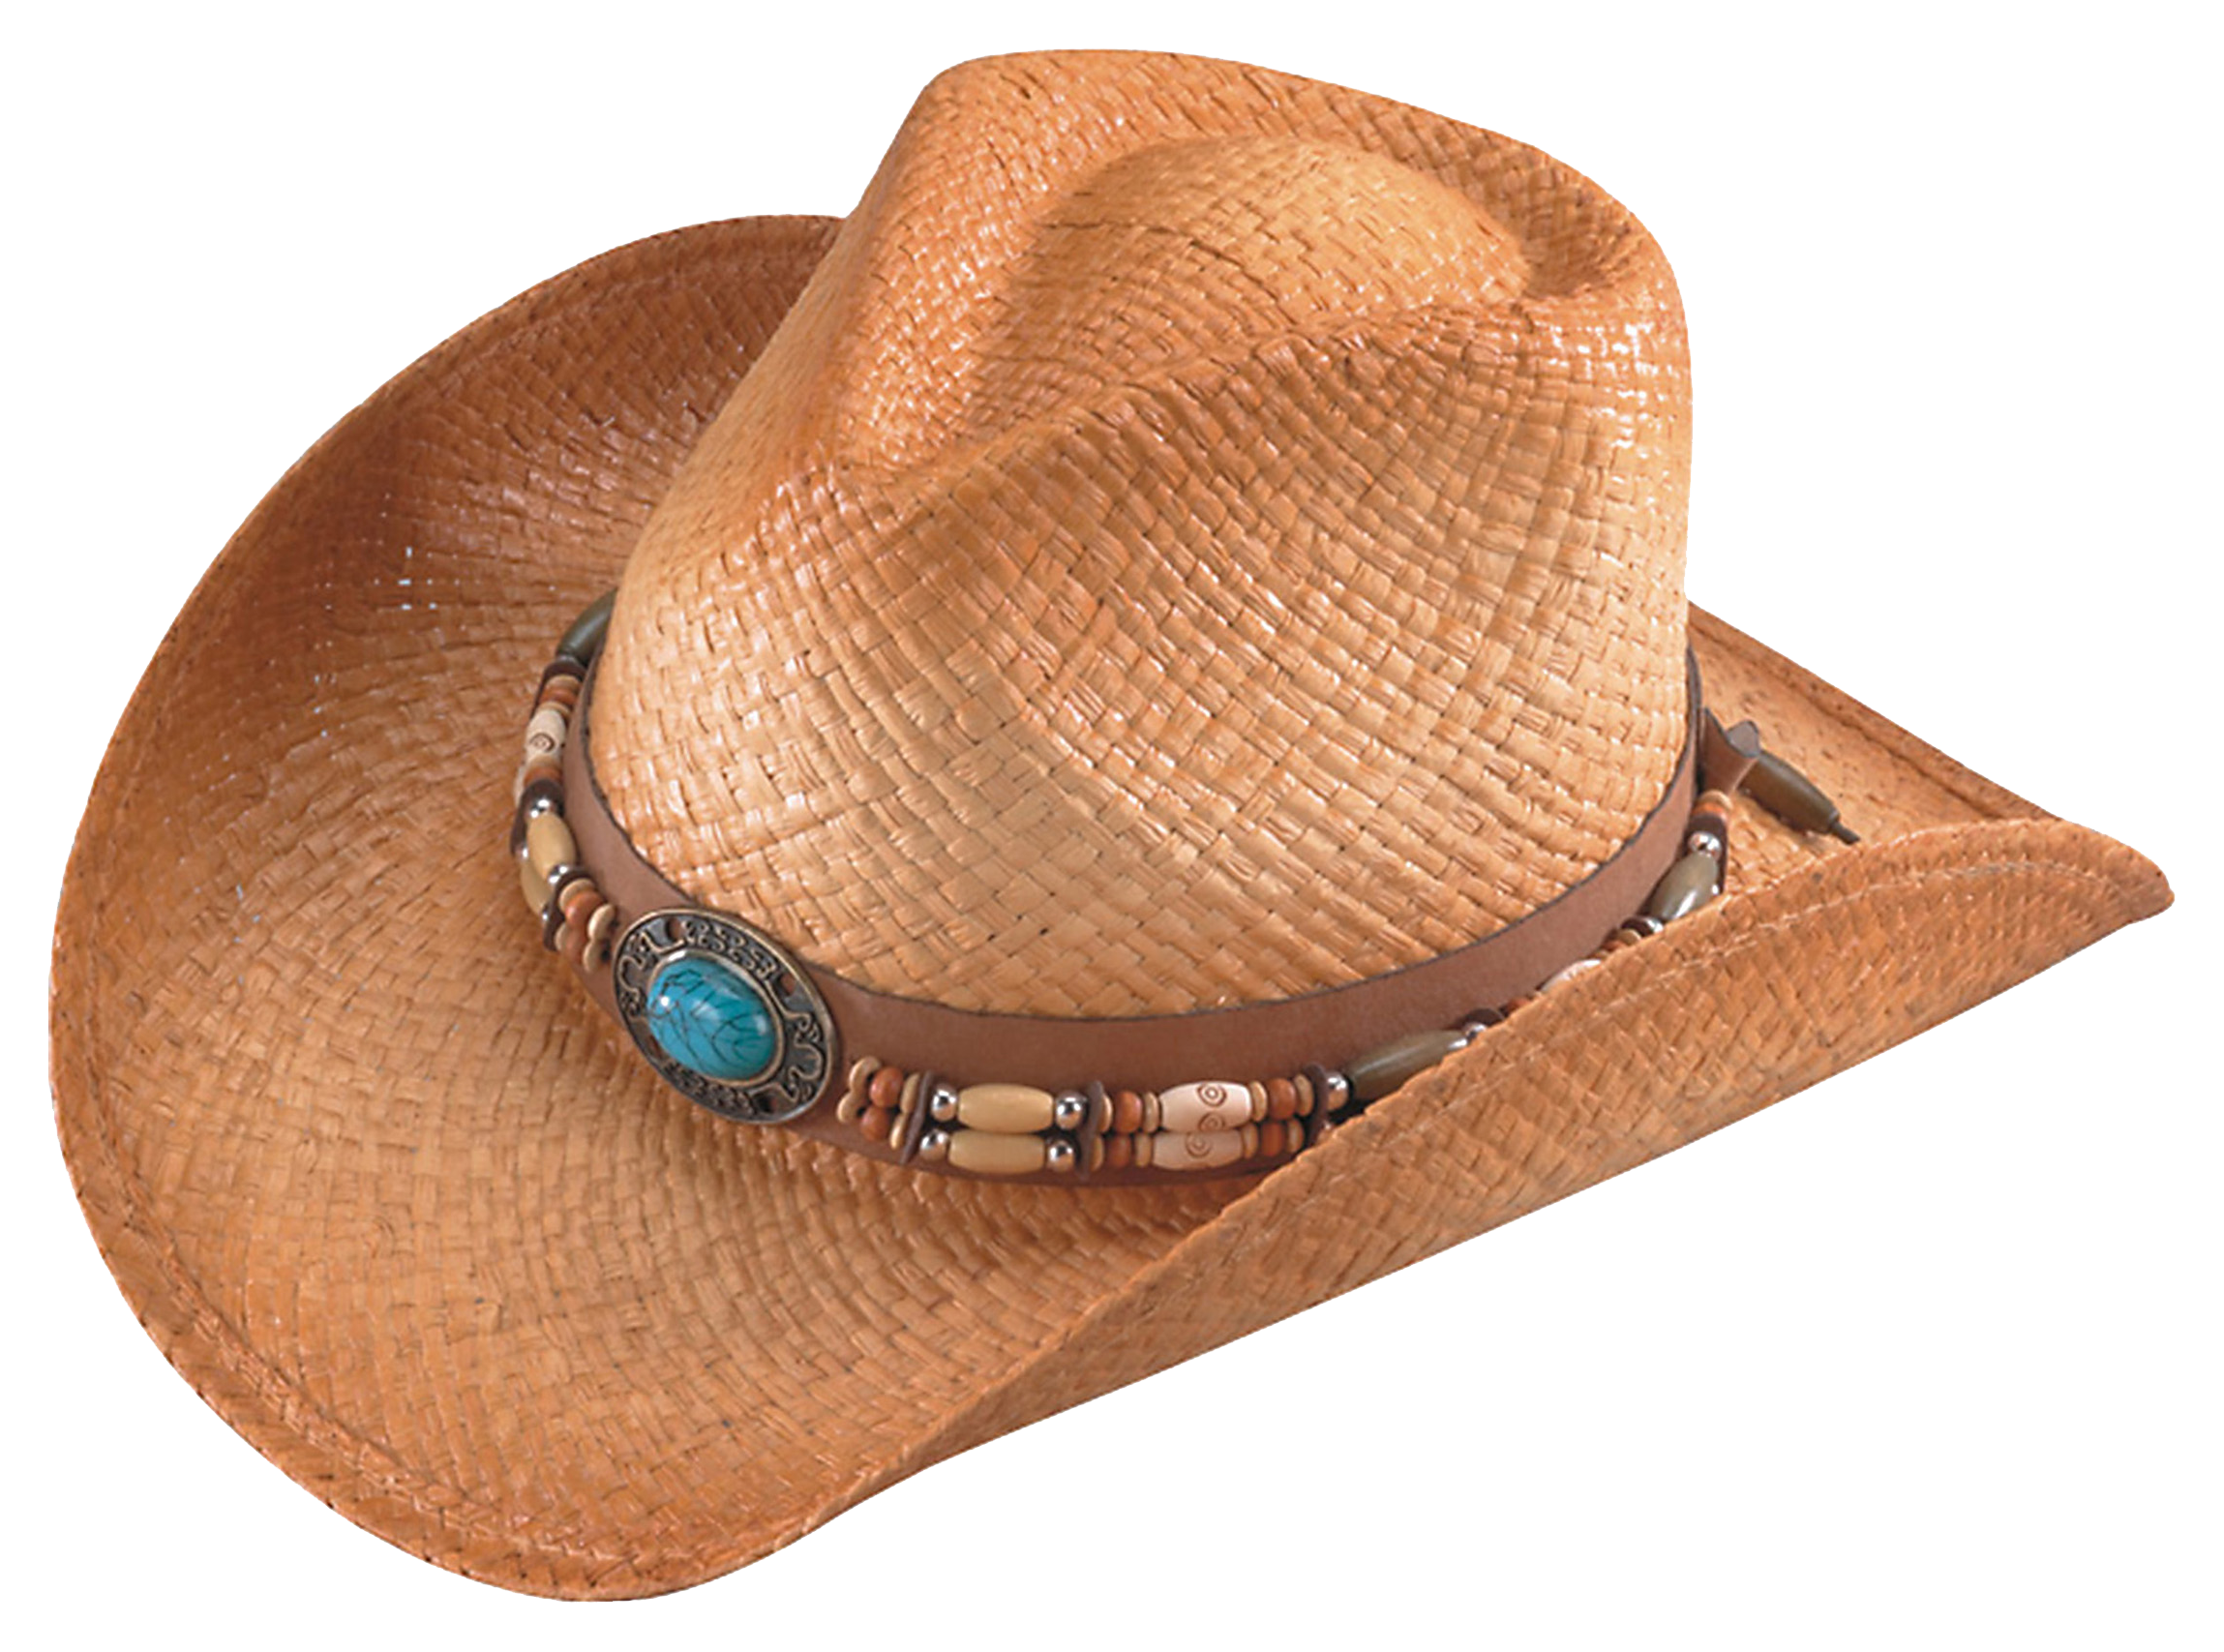 RedHead Weekend Walker Raffia Straw Cowboy Hat for Men